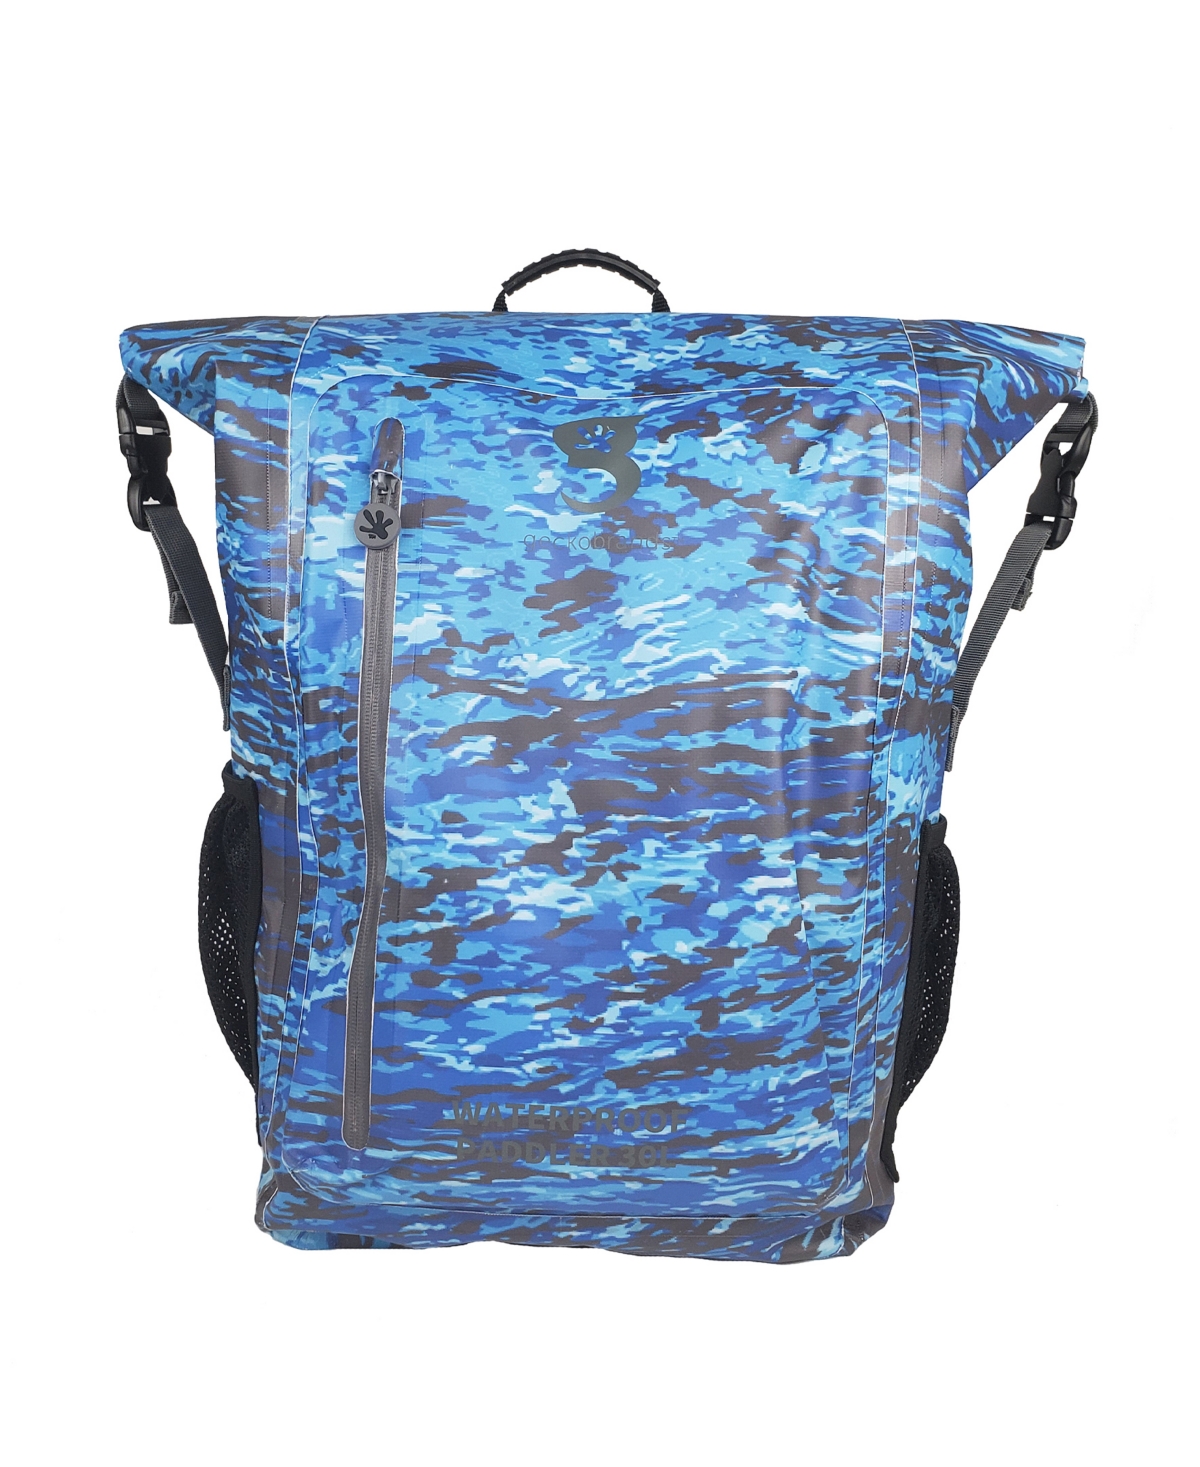 Paddler 30 Liters Water-Resistant Backpack - Ocean Geckoflage